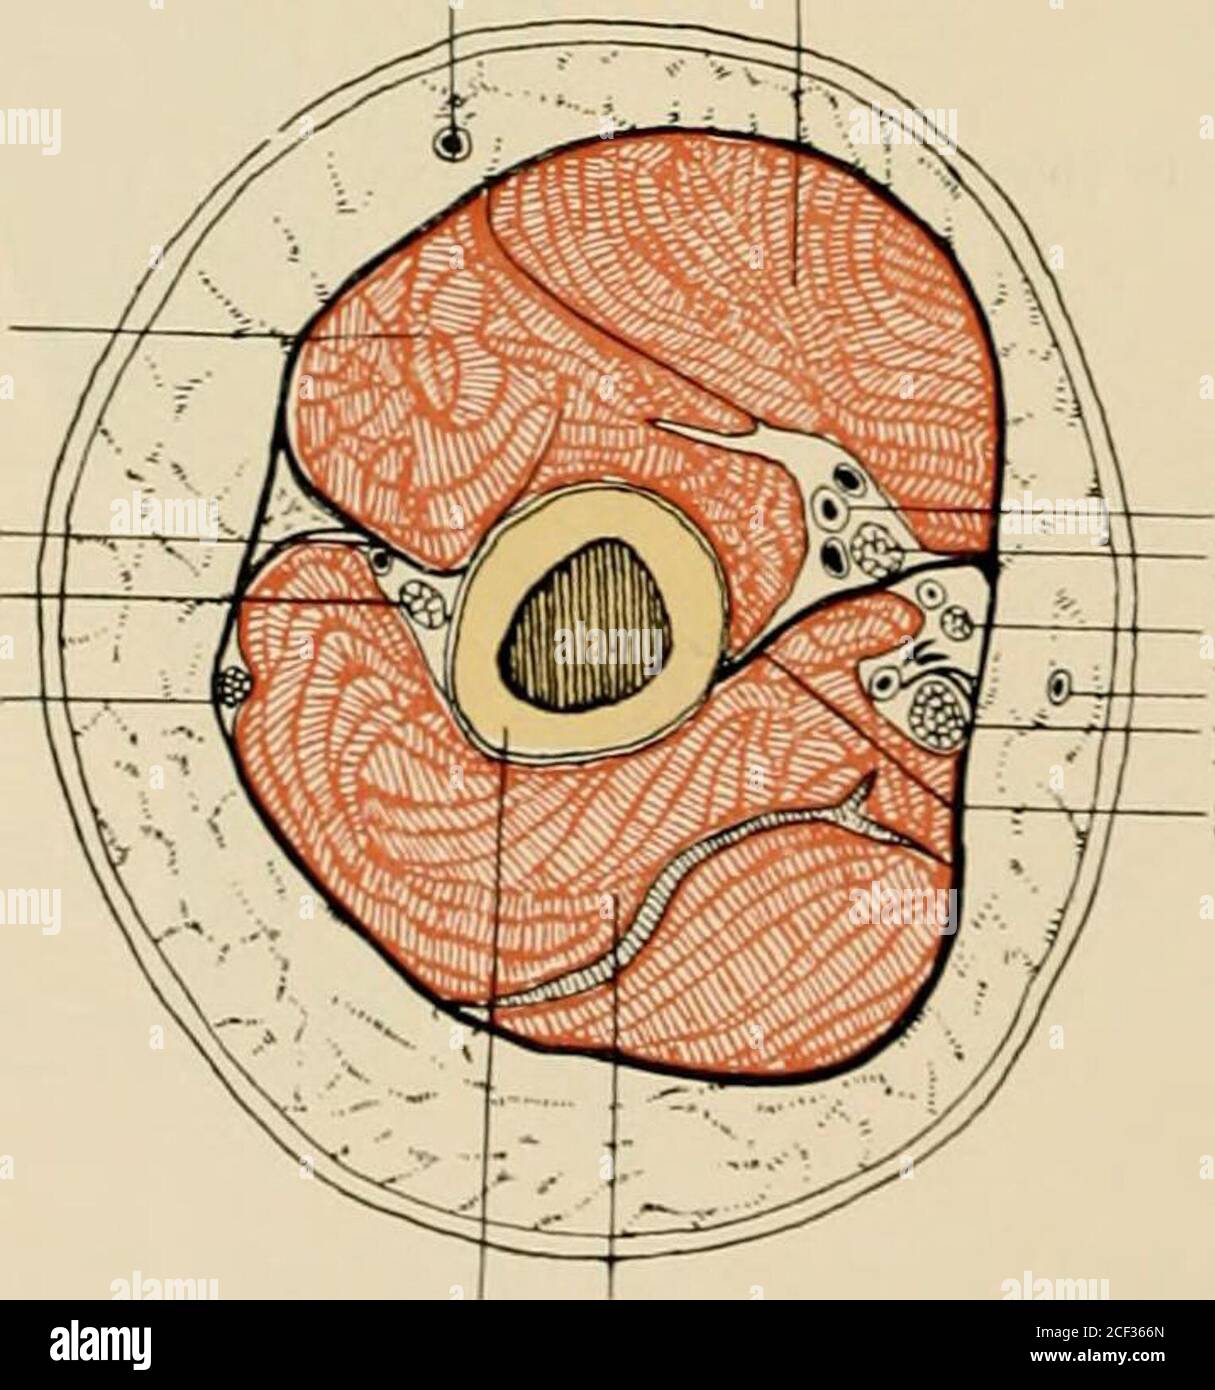 . Die Anatomie des Menschen : Mit Hinweisen auf die ärztliche Praxis : Abt. 1-6. Text und Atlas. M. pectoi. maj. X M. deltoideus X M. brachial. Schulterblattmuskeln, tiefere Schichte. Das Acromion ist abgeschnitten, ebenso der ^lusculus deltoideus. 51 V. cephalica M. biceps M. brachialis Septum intermusc. lateral. N. radial. N. cutan. antebrach. dors.. Vasa brachial. N. median. N. cutan. antebr. med. . basilica N. ulnaris Septum intermusc. mediale Humerus M. tricepsQuerschnitt durch die Mitte des rechten Dbcrarmes. Obere Schnittfläche (Aniputationsstumpf). Musculi extremitatis superioris.- 42 Stock Photo